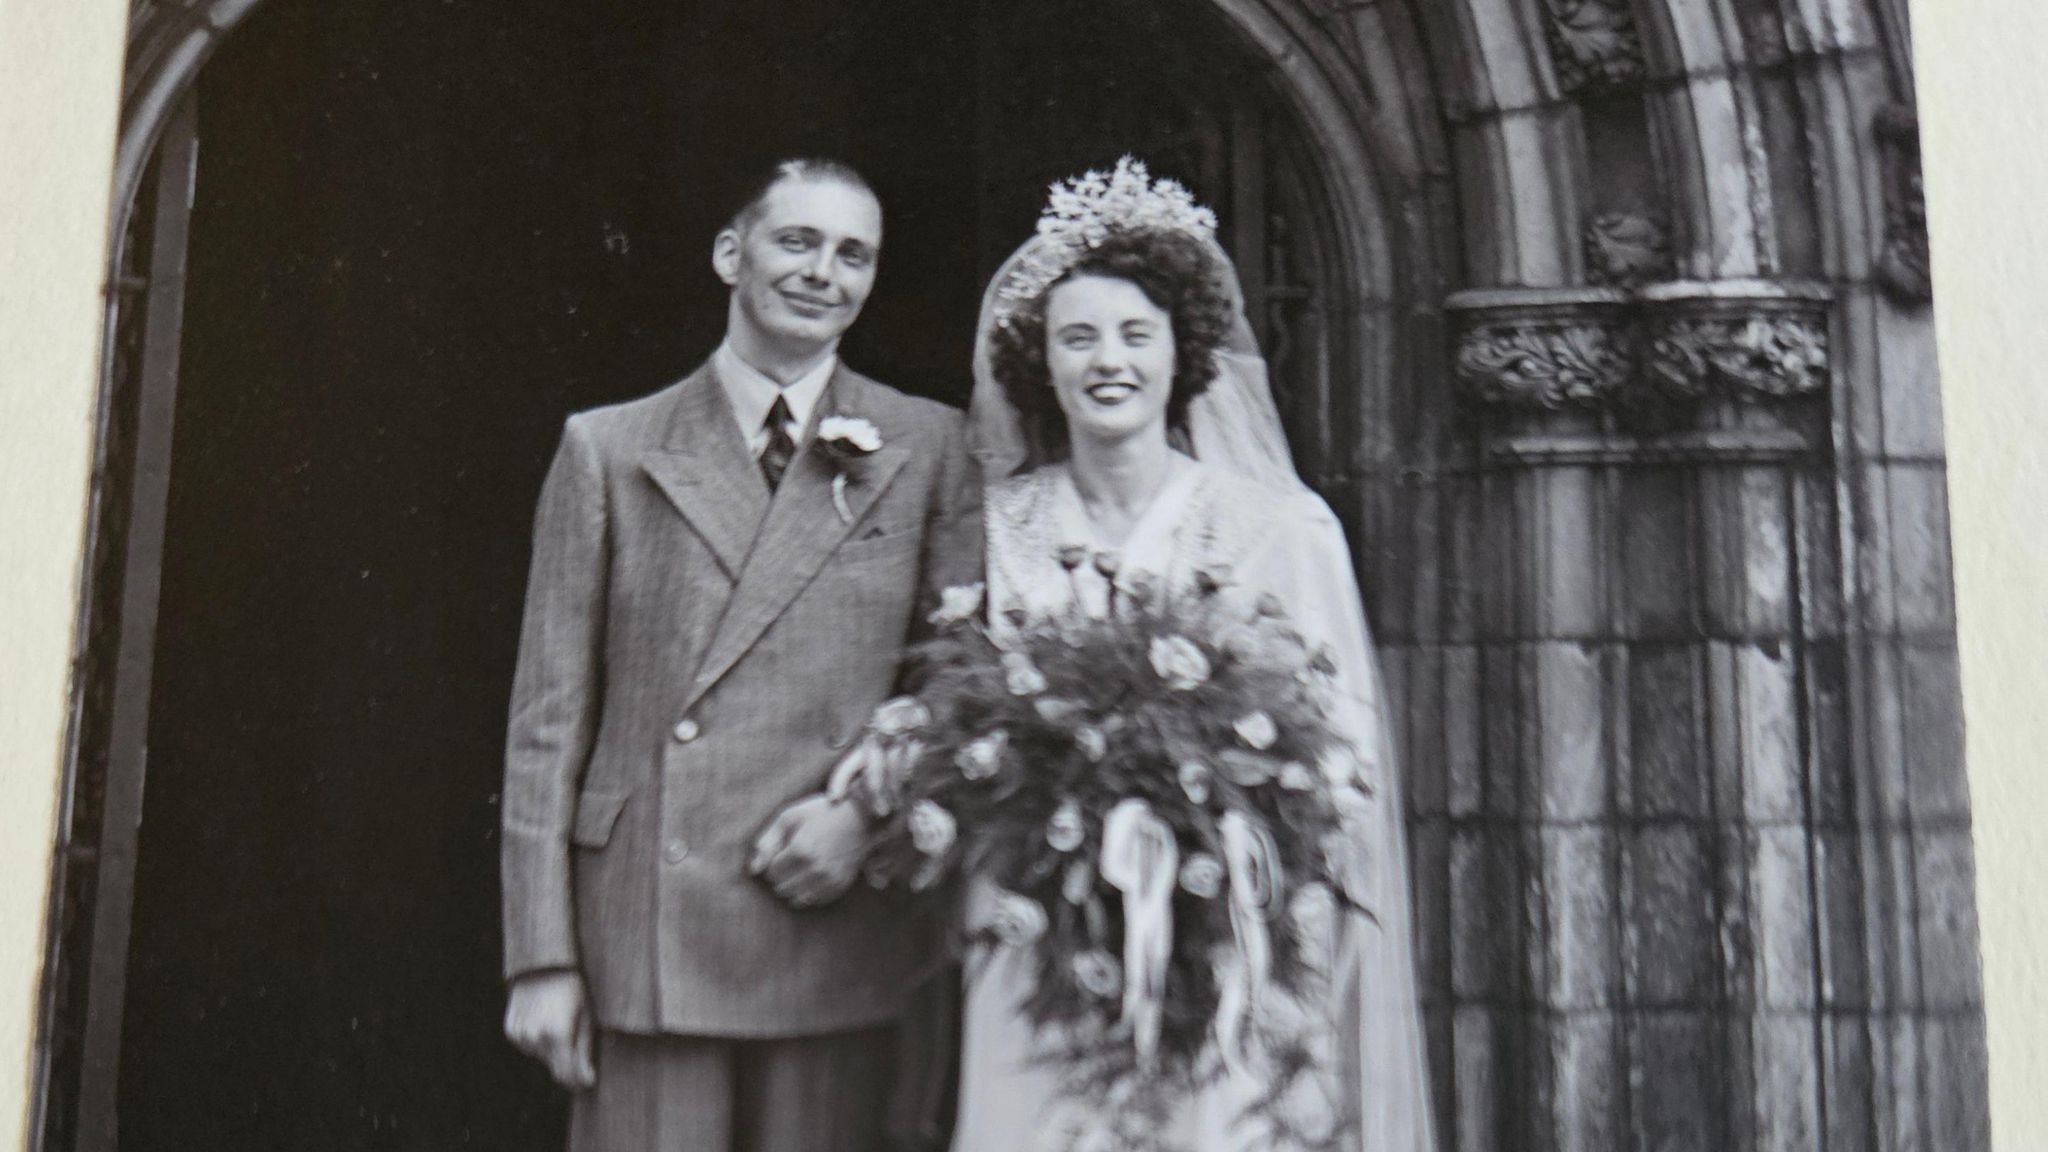 Mable Ogle's wedding photograph